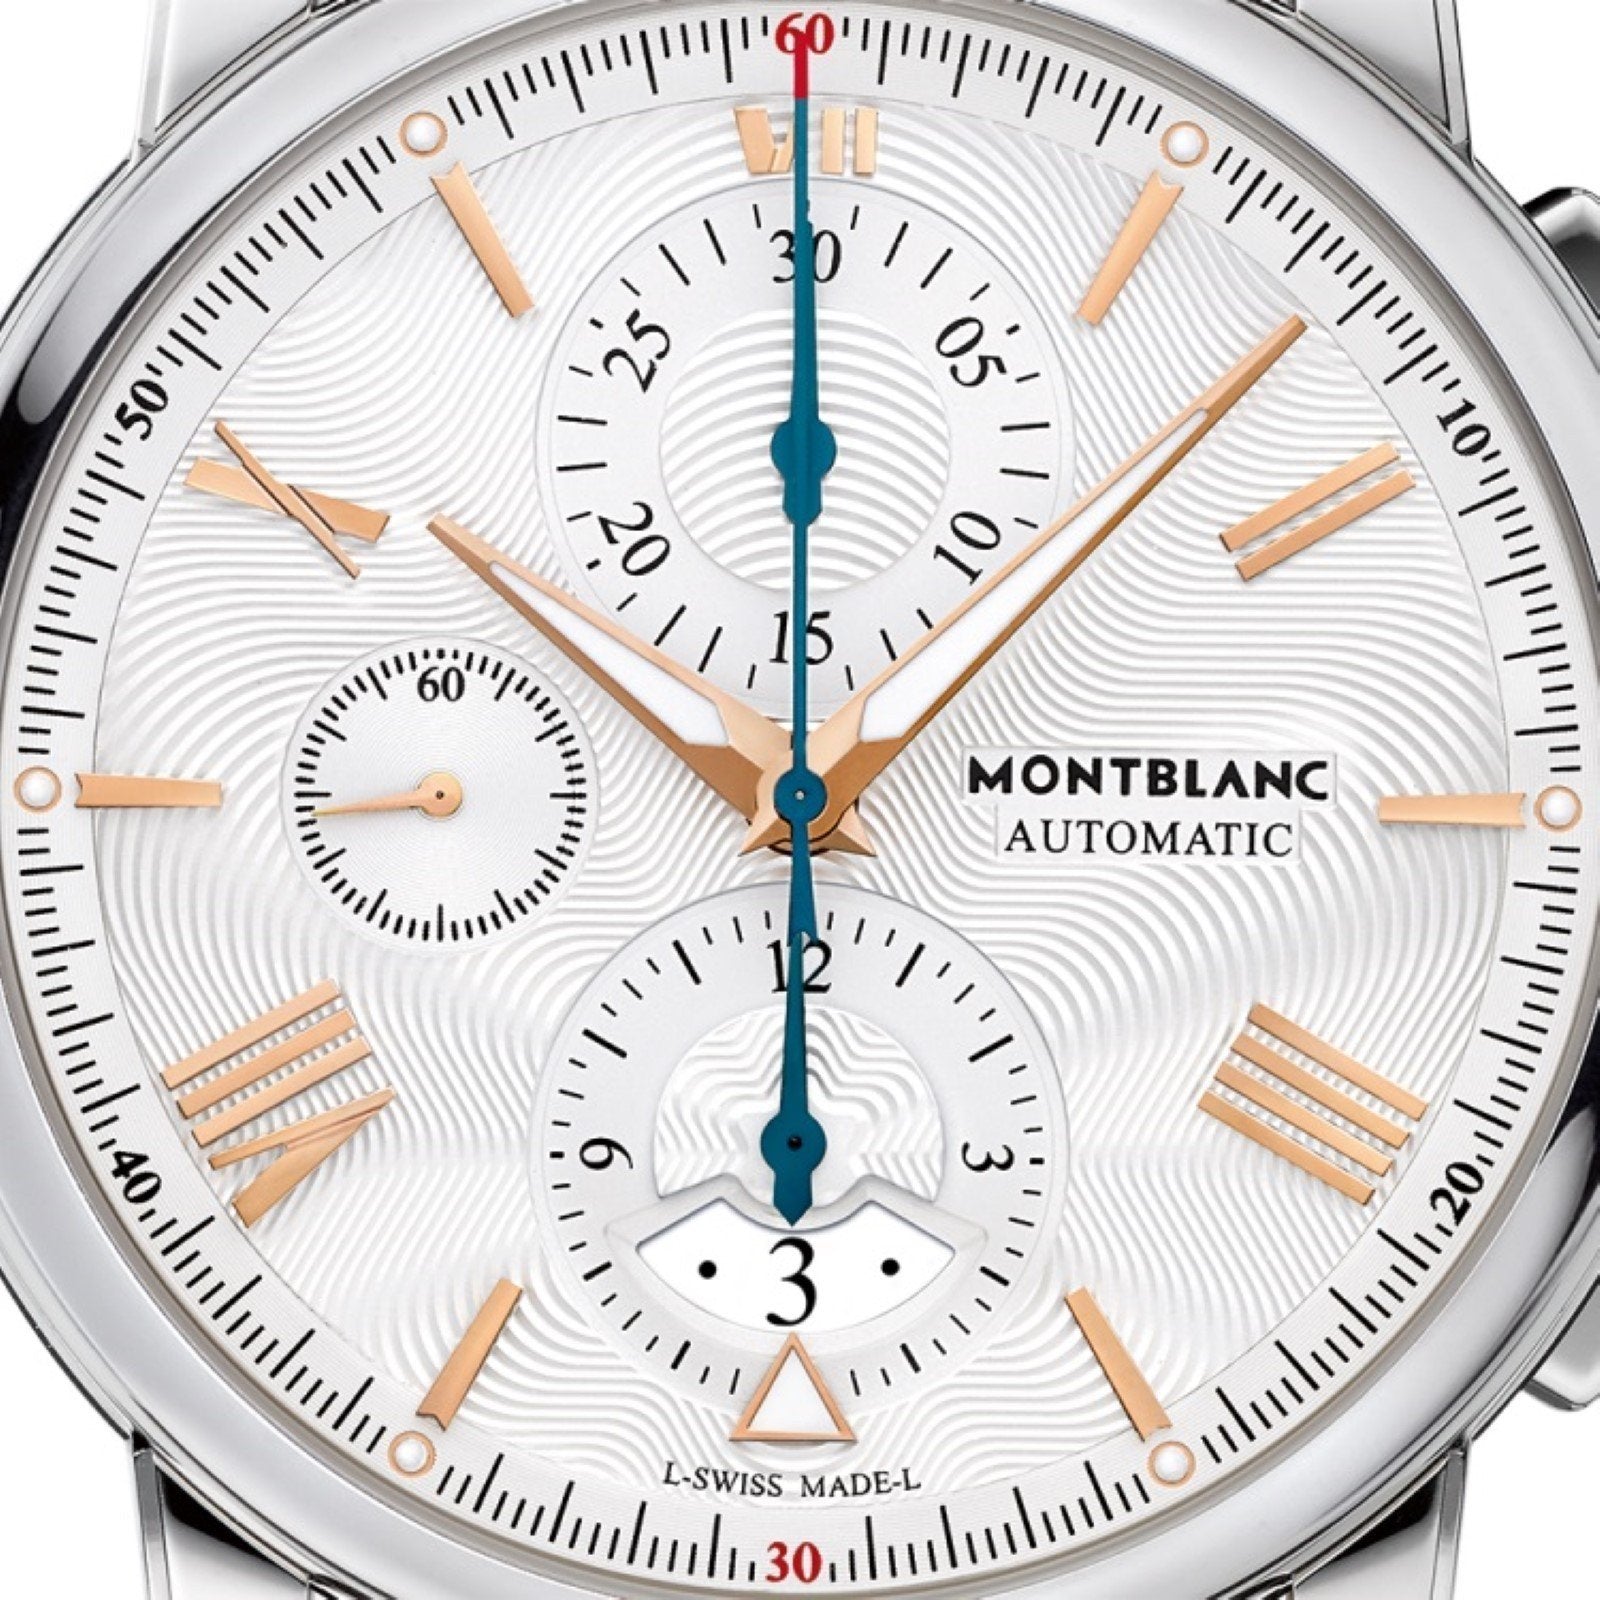 Montblanc orologio 4810 Chronograph 43mm argento automatico acciaio 114856 - Gioielleria Capodagli